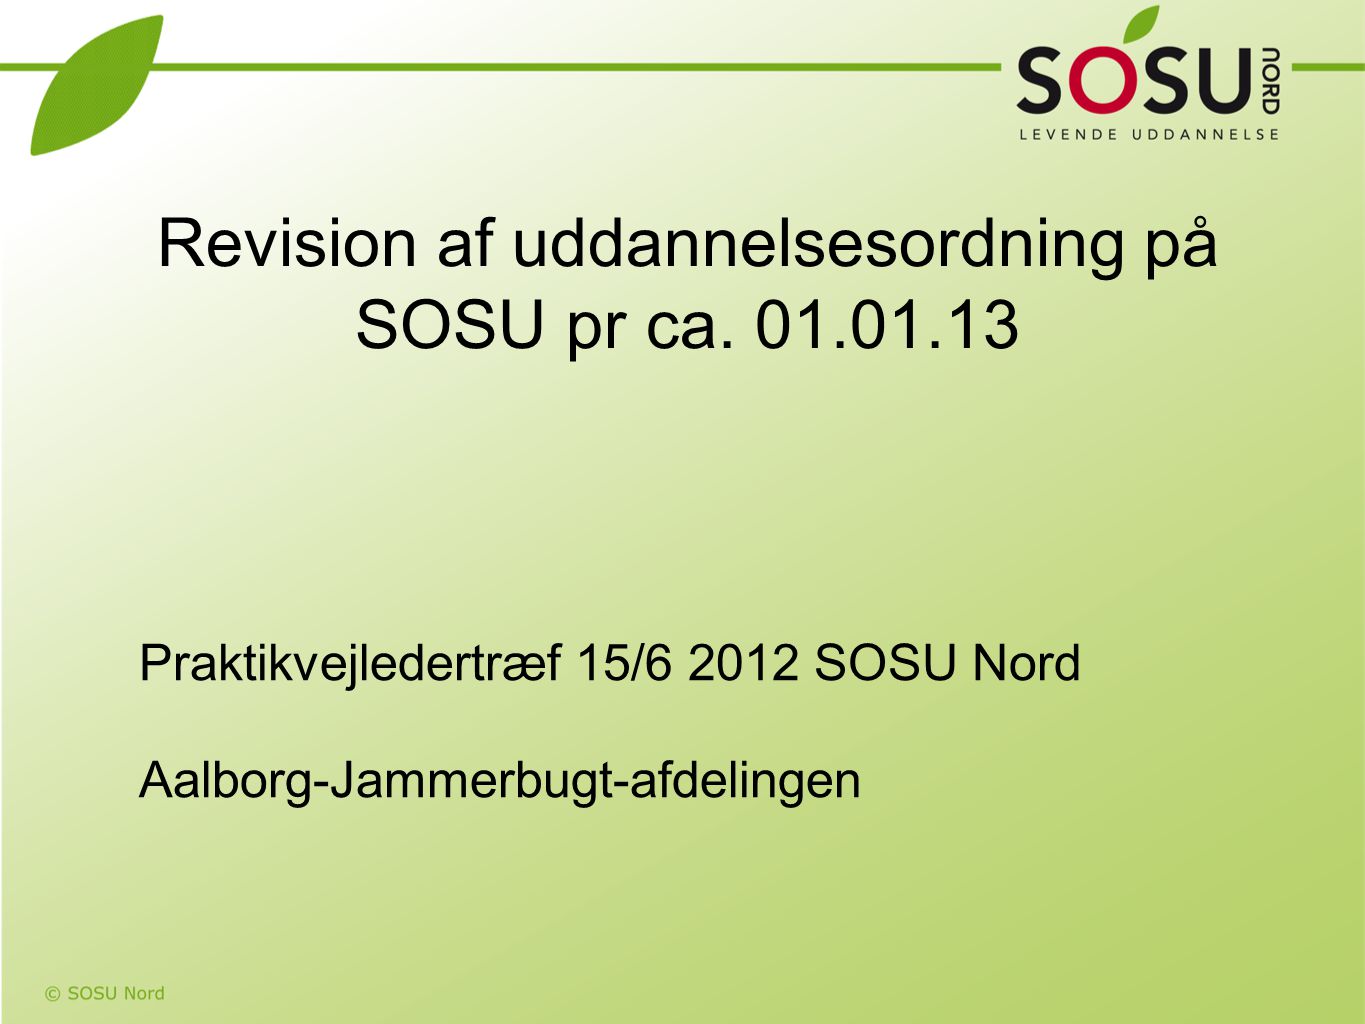 Revision af uddannelsesordning på SOSU pr ca